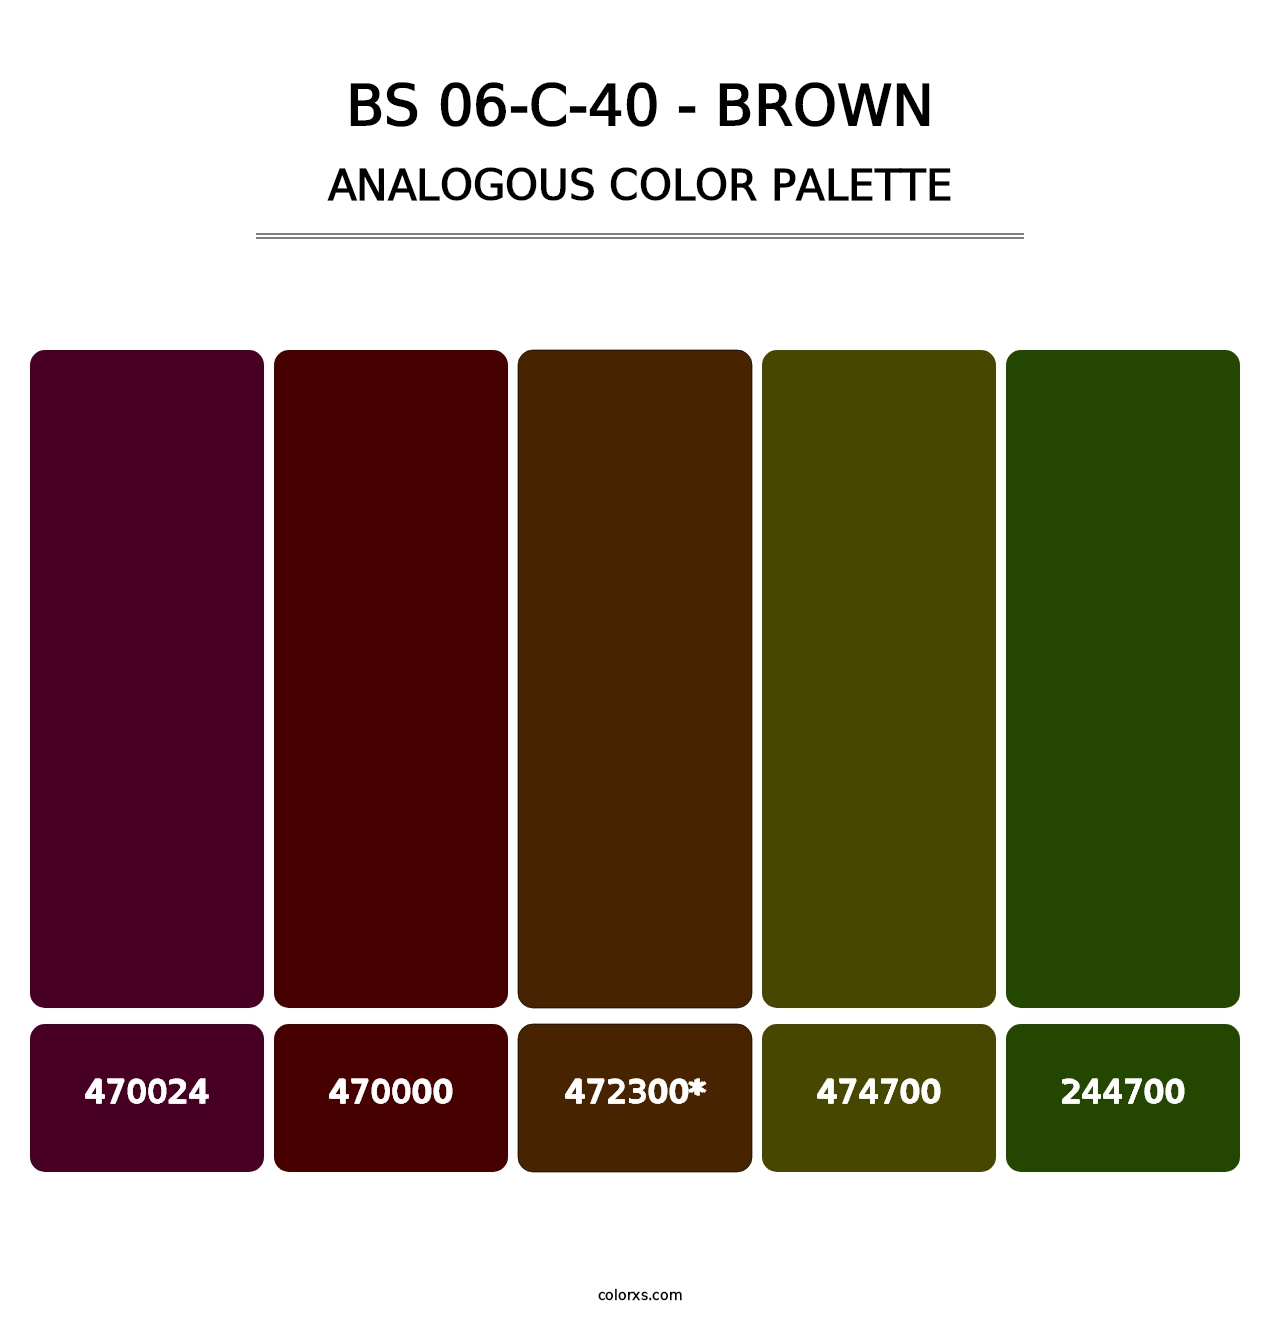 BS 06-C-40 - Brown - Analogous Color Palette